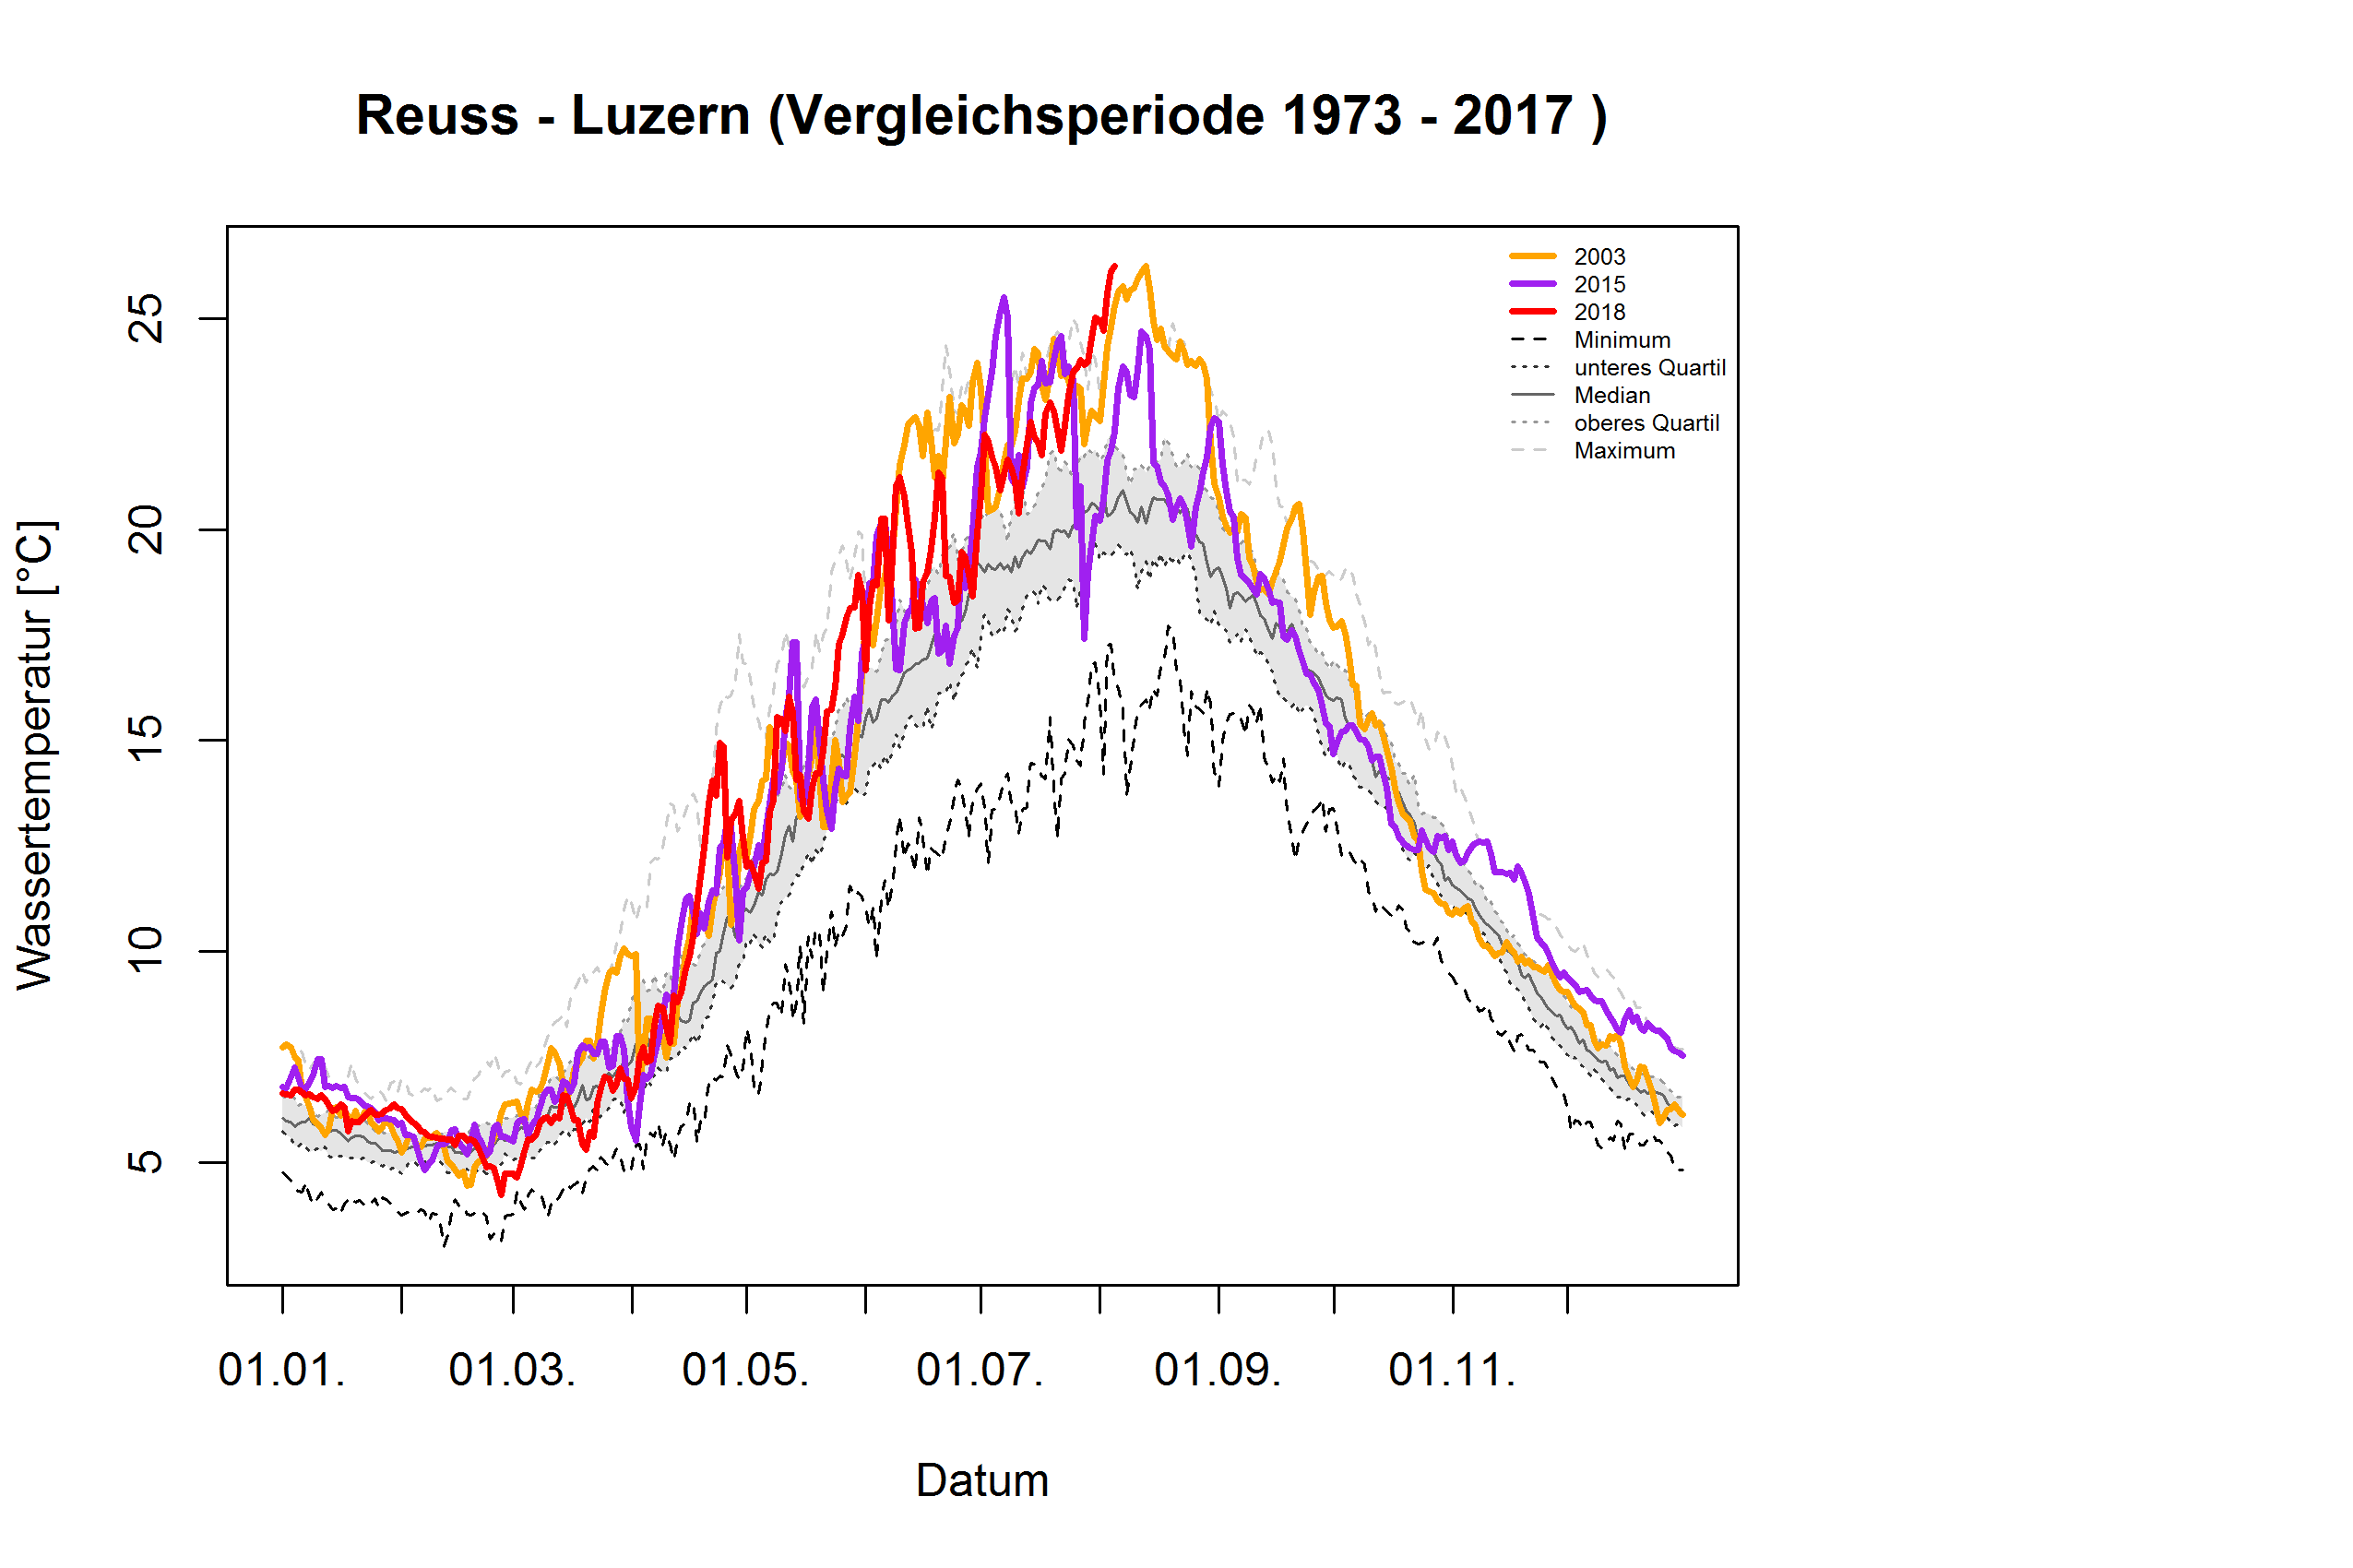 Reuss - Luzern: Vergleichsperiode 1973 - 2017